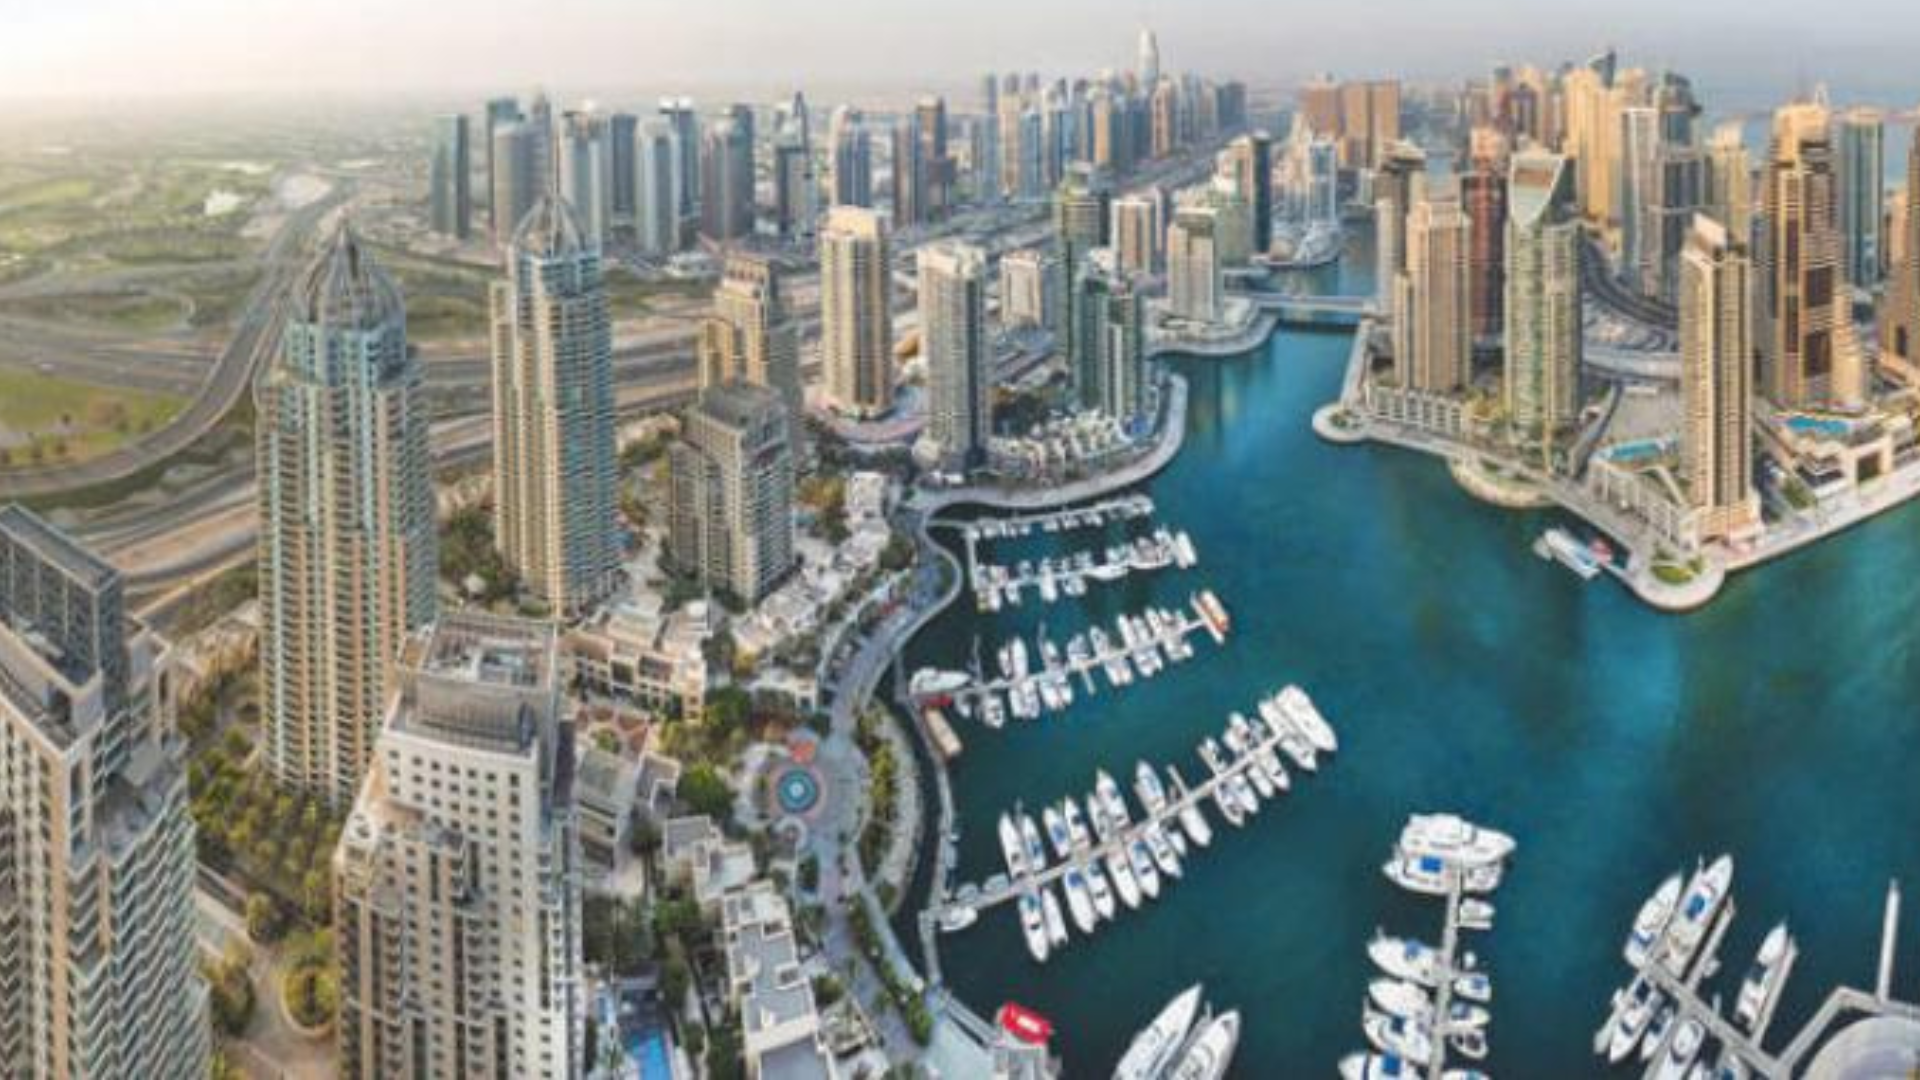  توقعات بتسارع نمو القطاع العقاري في الإمارات خلال النصف الثاني